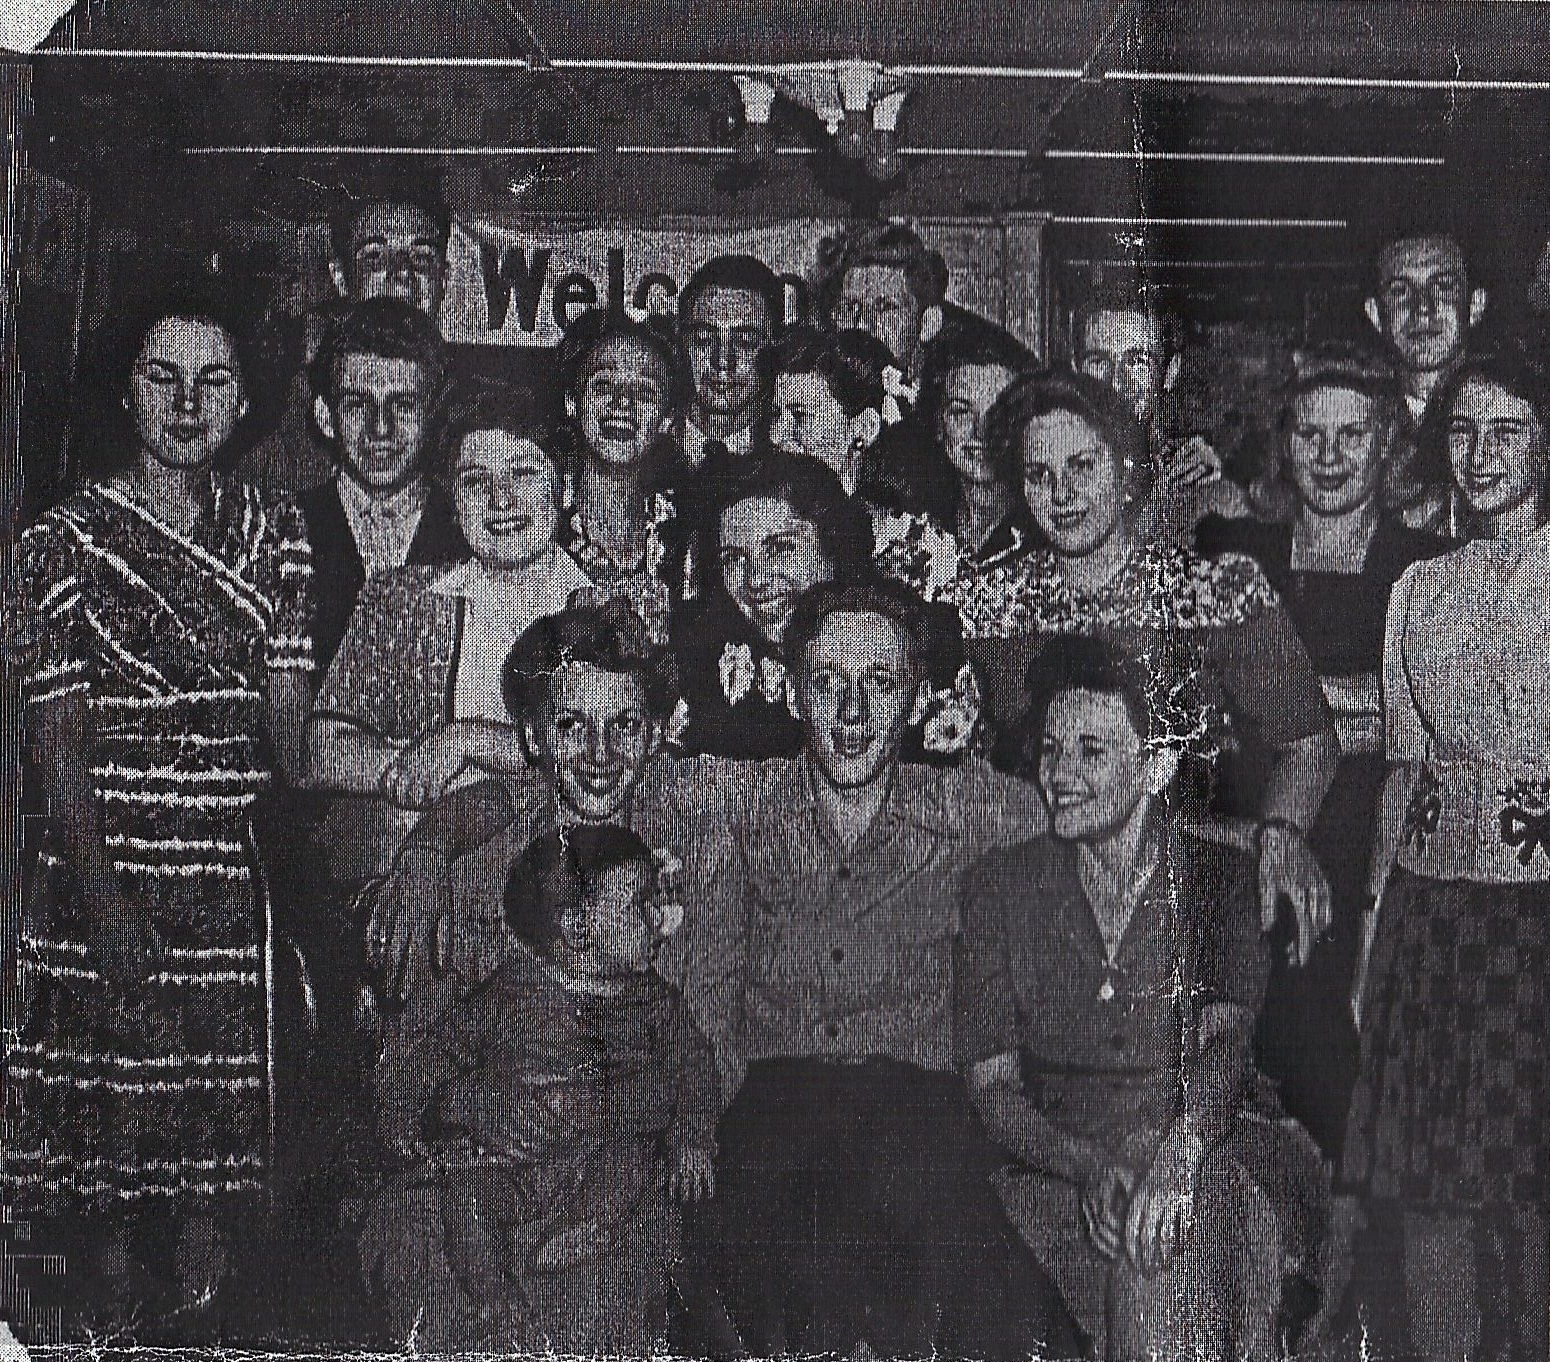 Sussman Family, 1945 NY